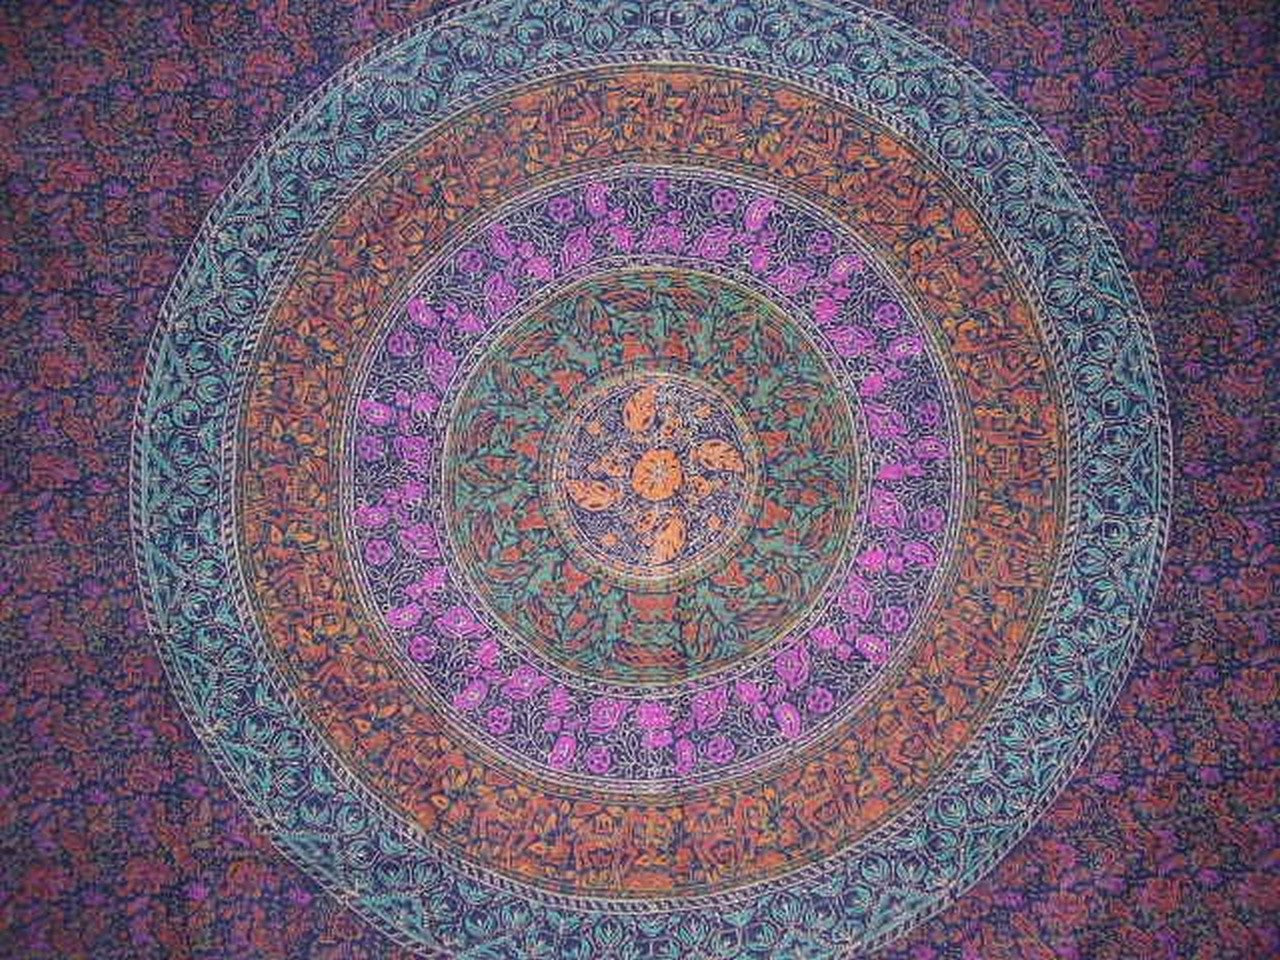 Sangananeer 塊印花掛毯棉質床罩 108 英吋 x 108 英吋大王藍色